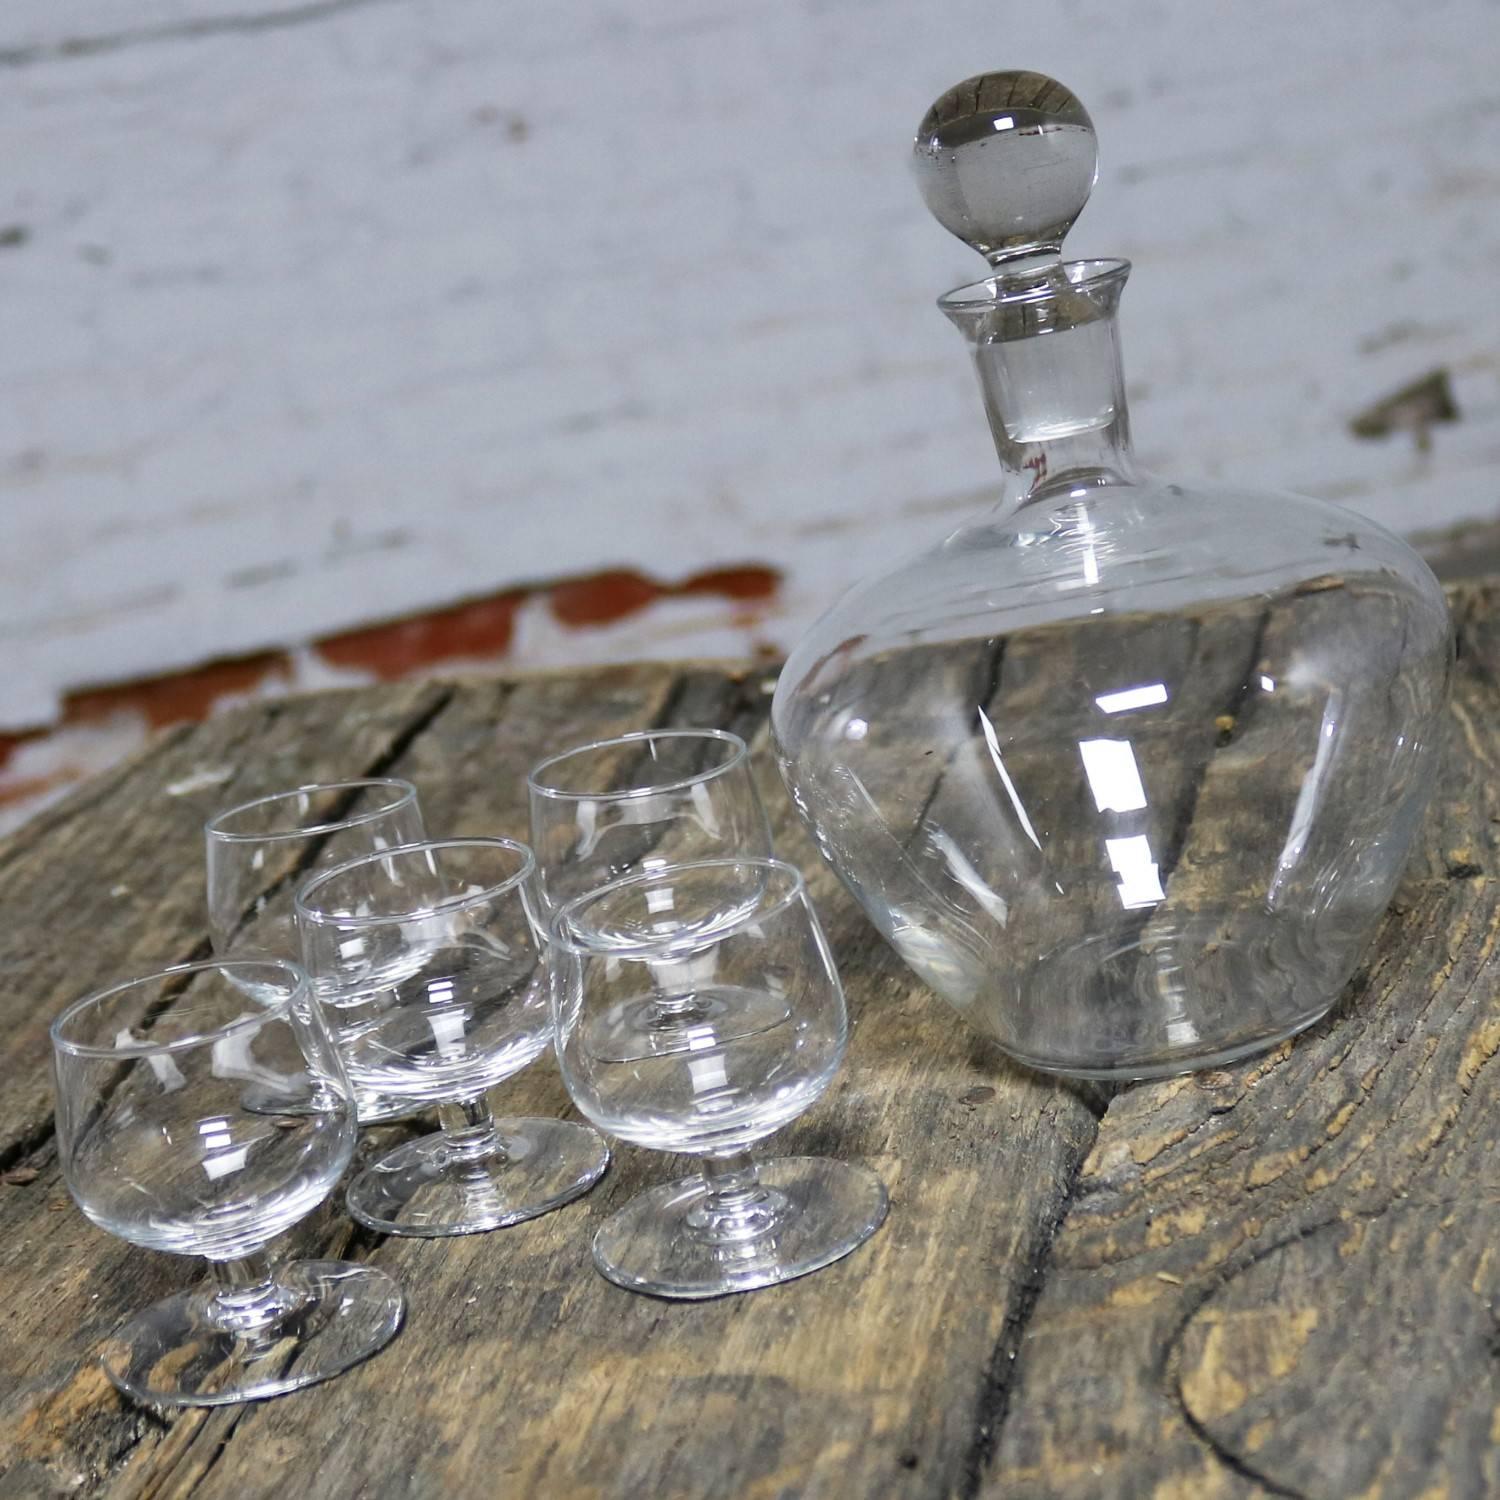 Bel ensemble de carafe Tinka en cristal clair comprenant une carafe et cinq verres, conçu par A. D. Copier pour Royal Leerdam Holland. La carafe et les cinq verres sont tous dans un état vintage fabuleux, sans éclats, ni fissures, ni chigres. Cet